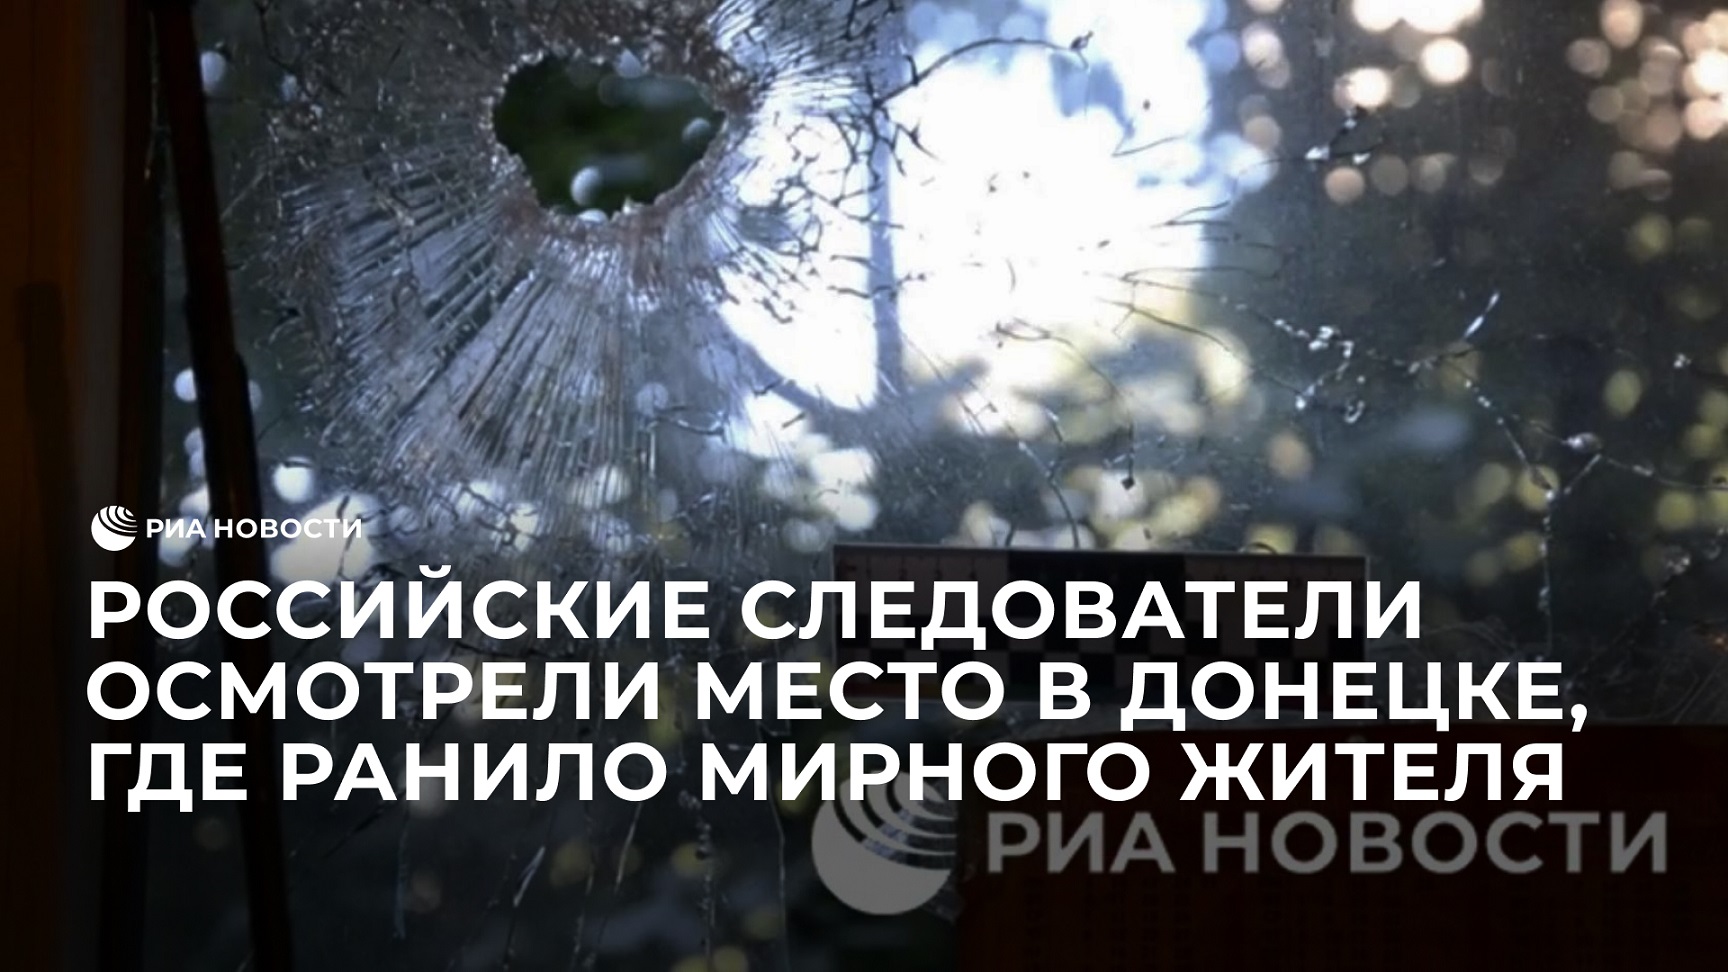 Следователи осмотрели место обстрела в Донецке